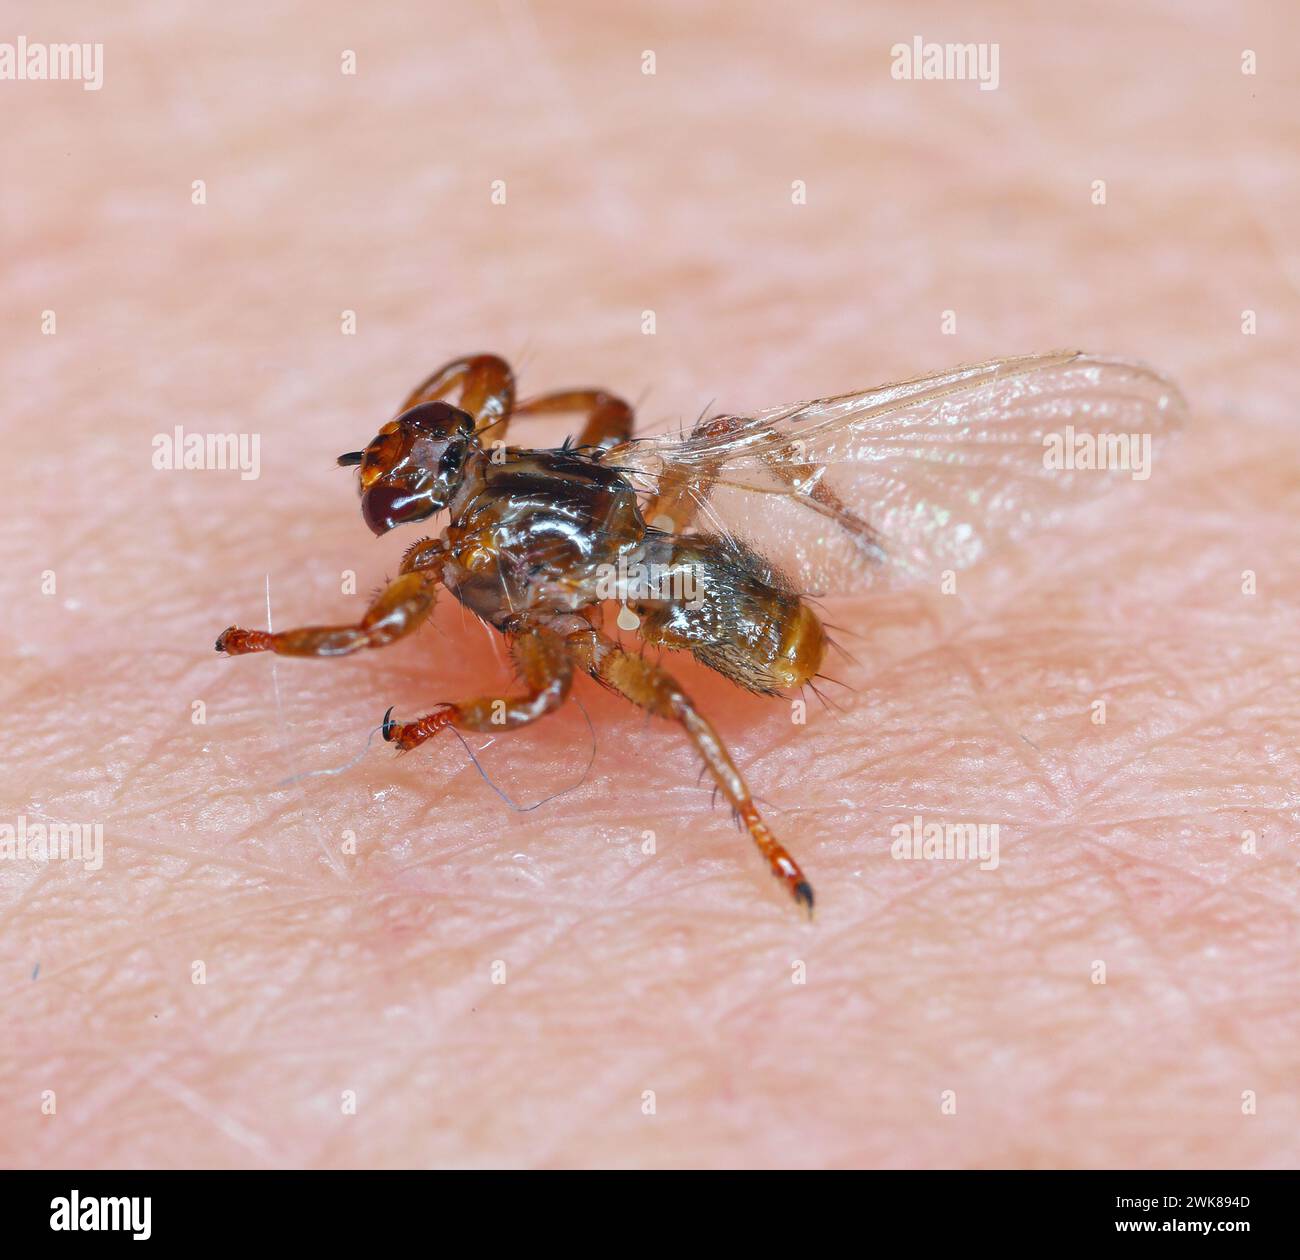 Eine Makroaufnahme der Parasiten Hirschfliege, Lipoptena cervi, auf einem haarigen Sking. Sie wird manchmal als fliegende Zecke bezeichnet. Stockfoto